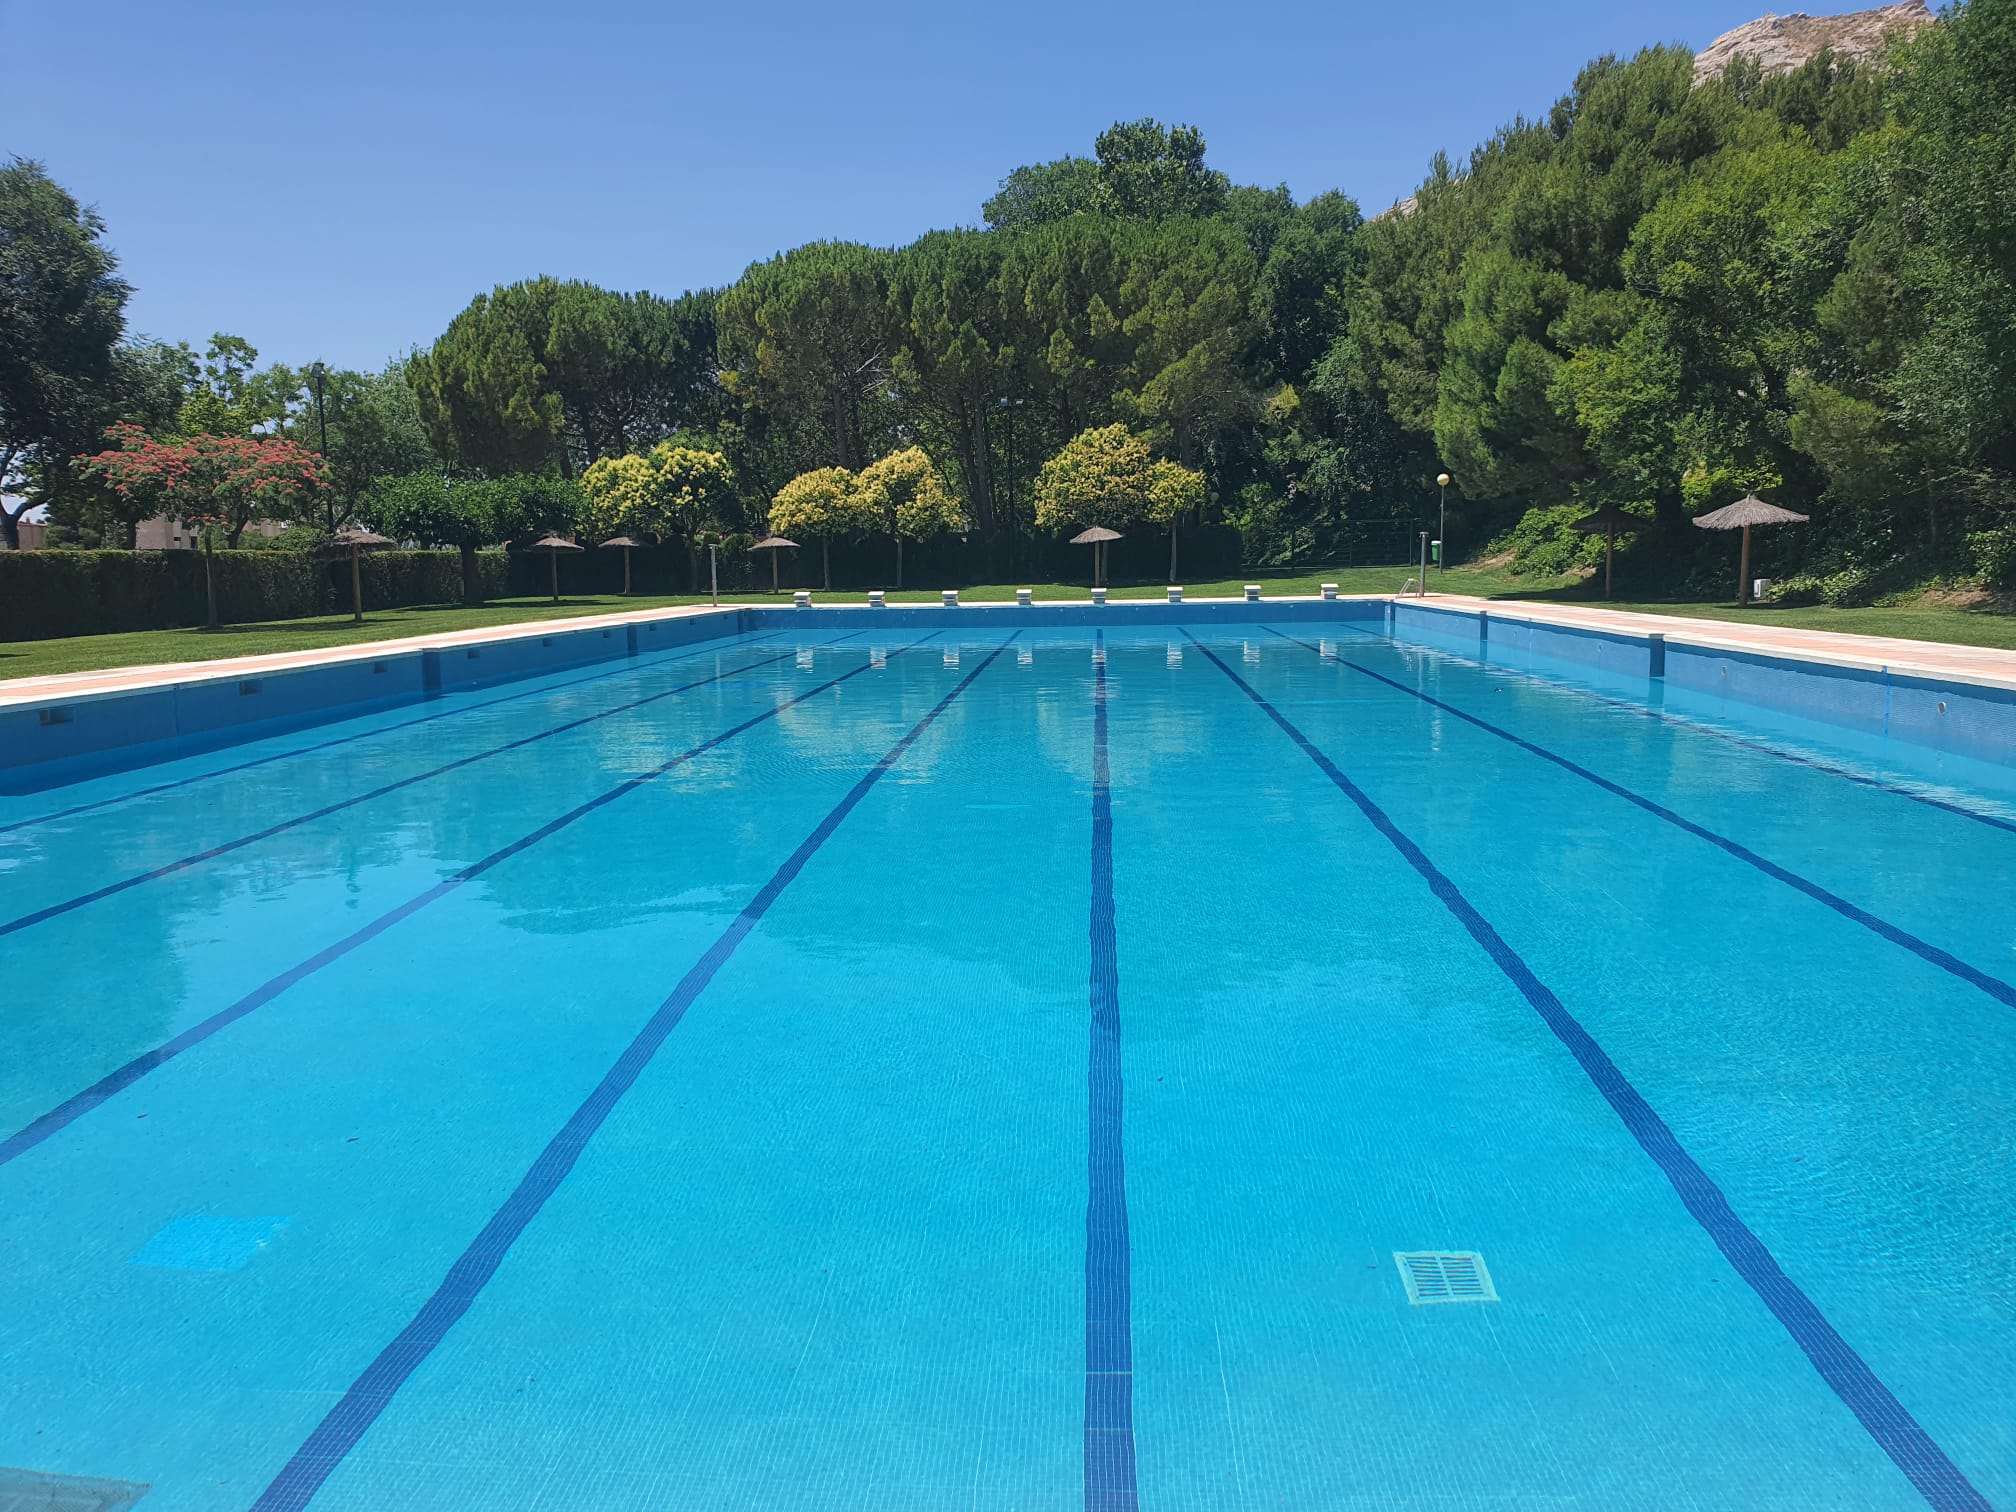 En la piscina municipal de Villena sólo se permitirá el reagrupamiento de personas de la misma familia